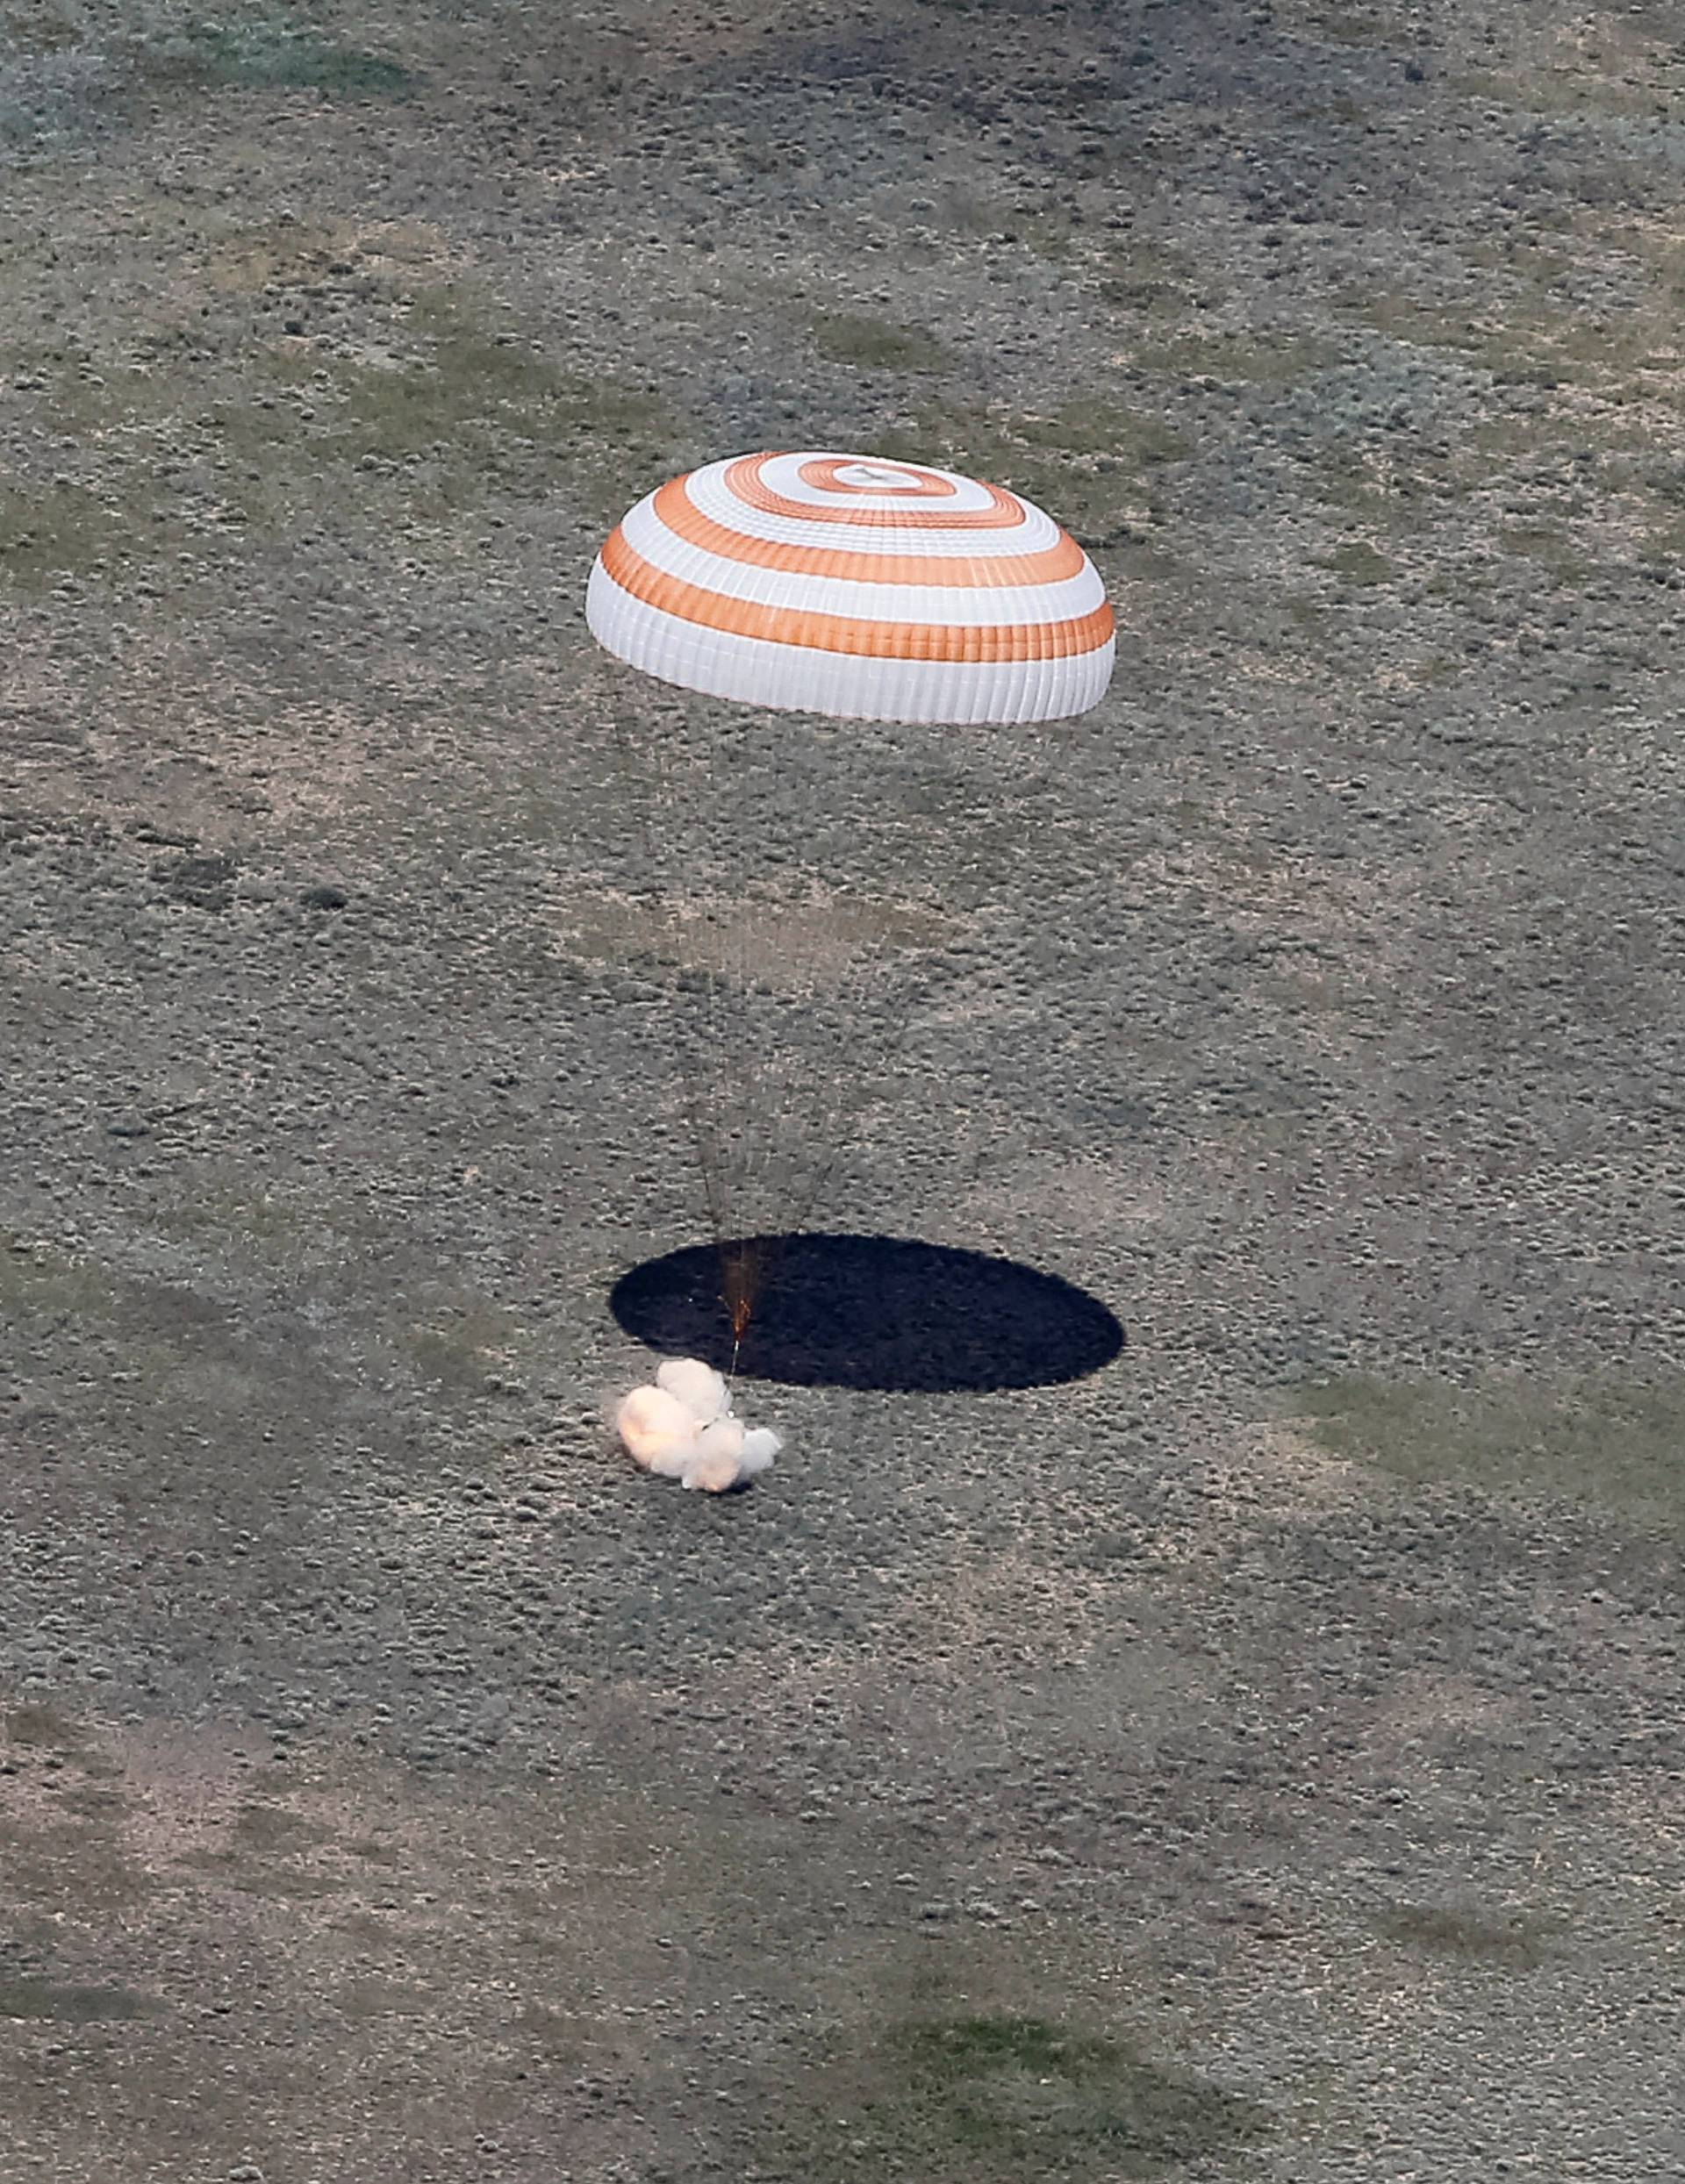 Soyuz TMA-19M spacecraft capsule carrying ISS crew members Peake of Britain, Malenchenko of Russia and Kopra of U.S. lands near Dzhezkazgan